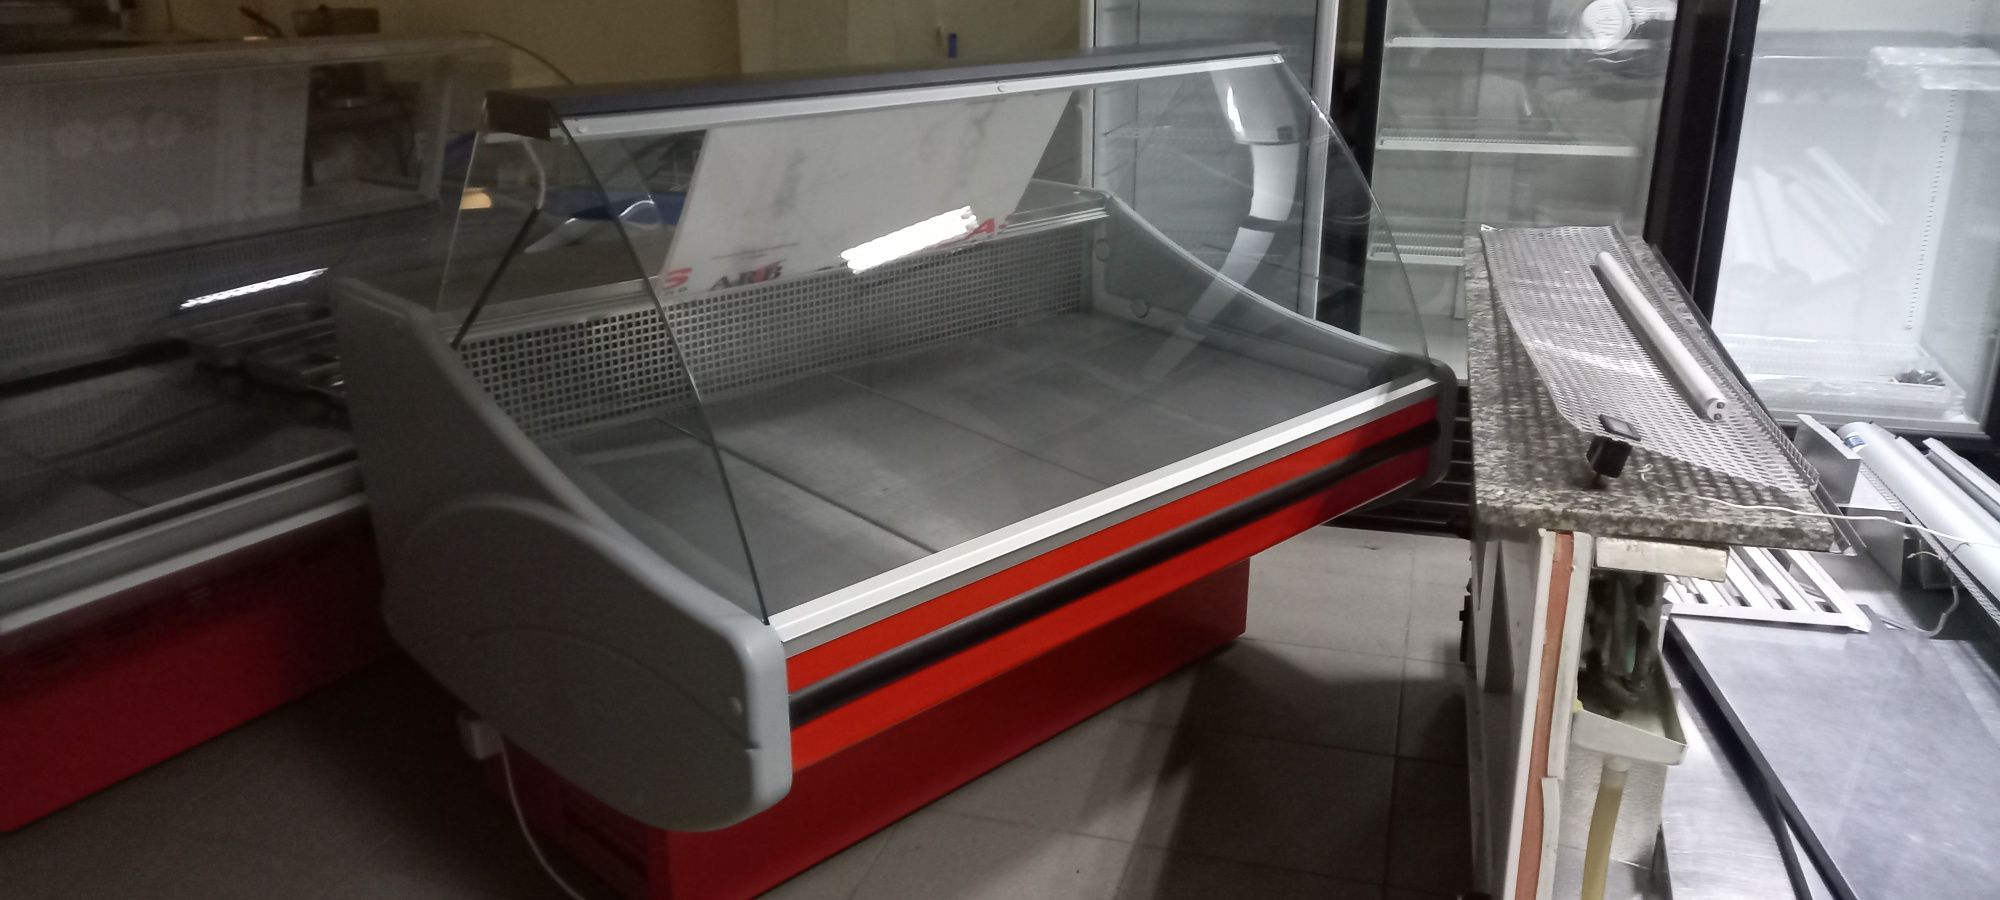 холодильне обладнання вітрини / витрина холодильная